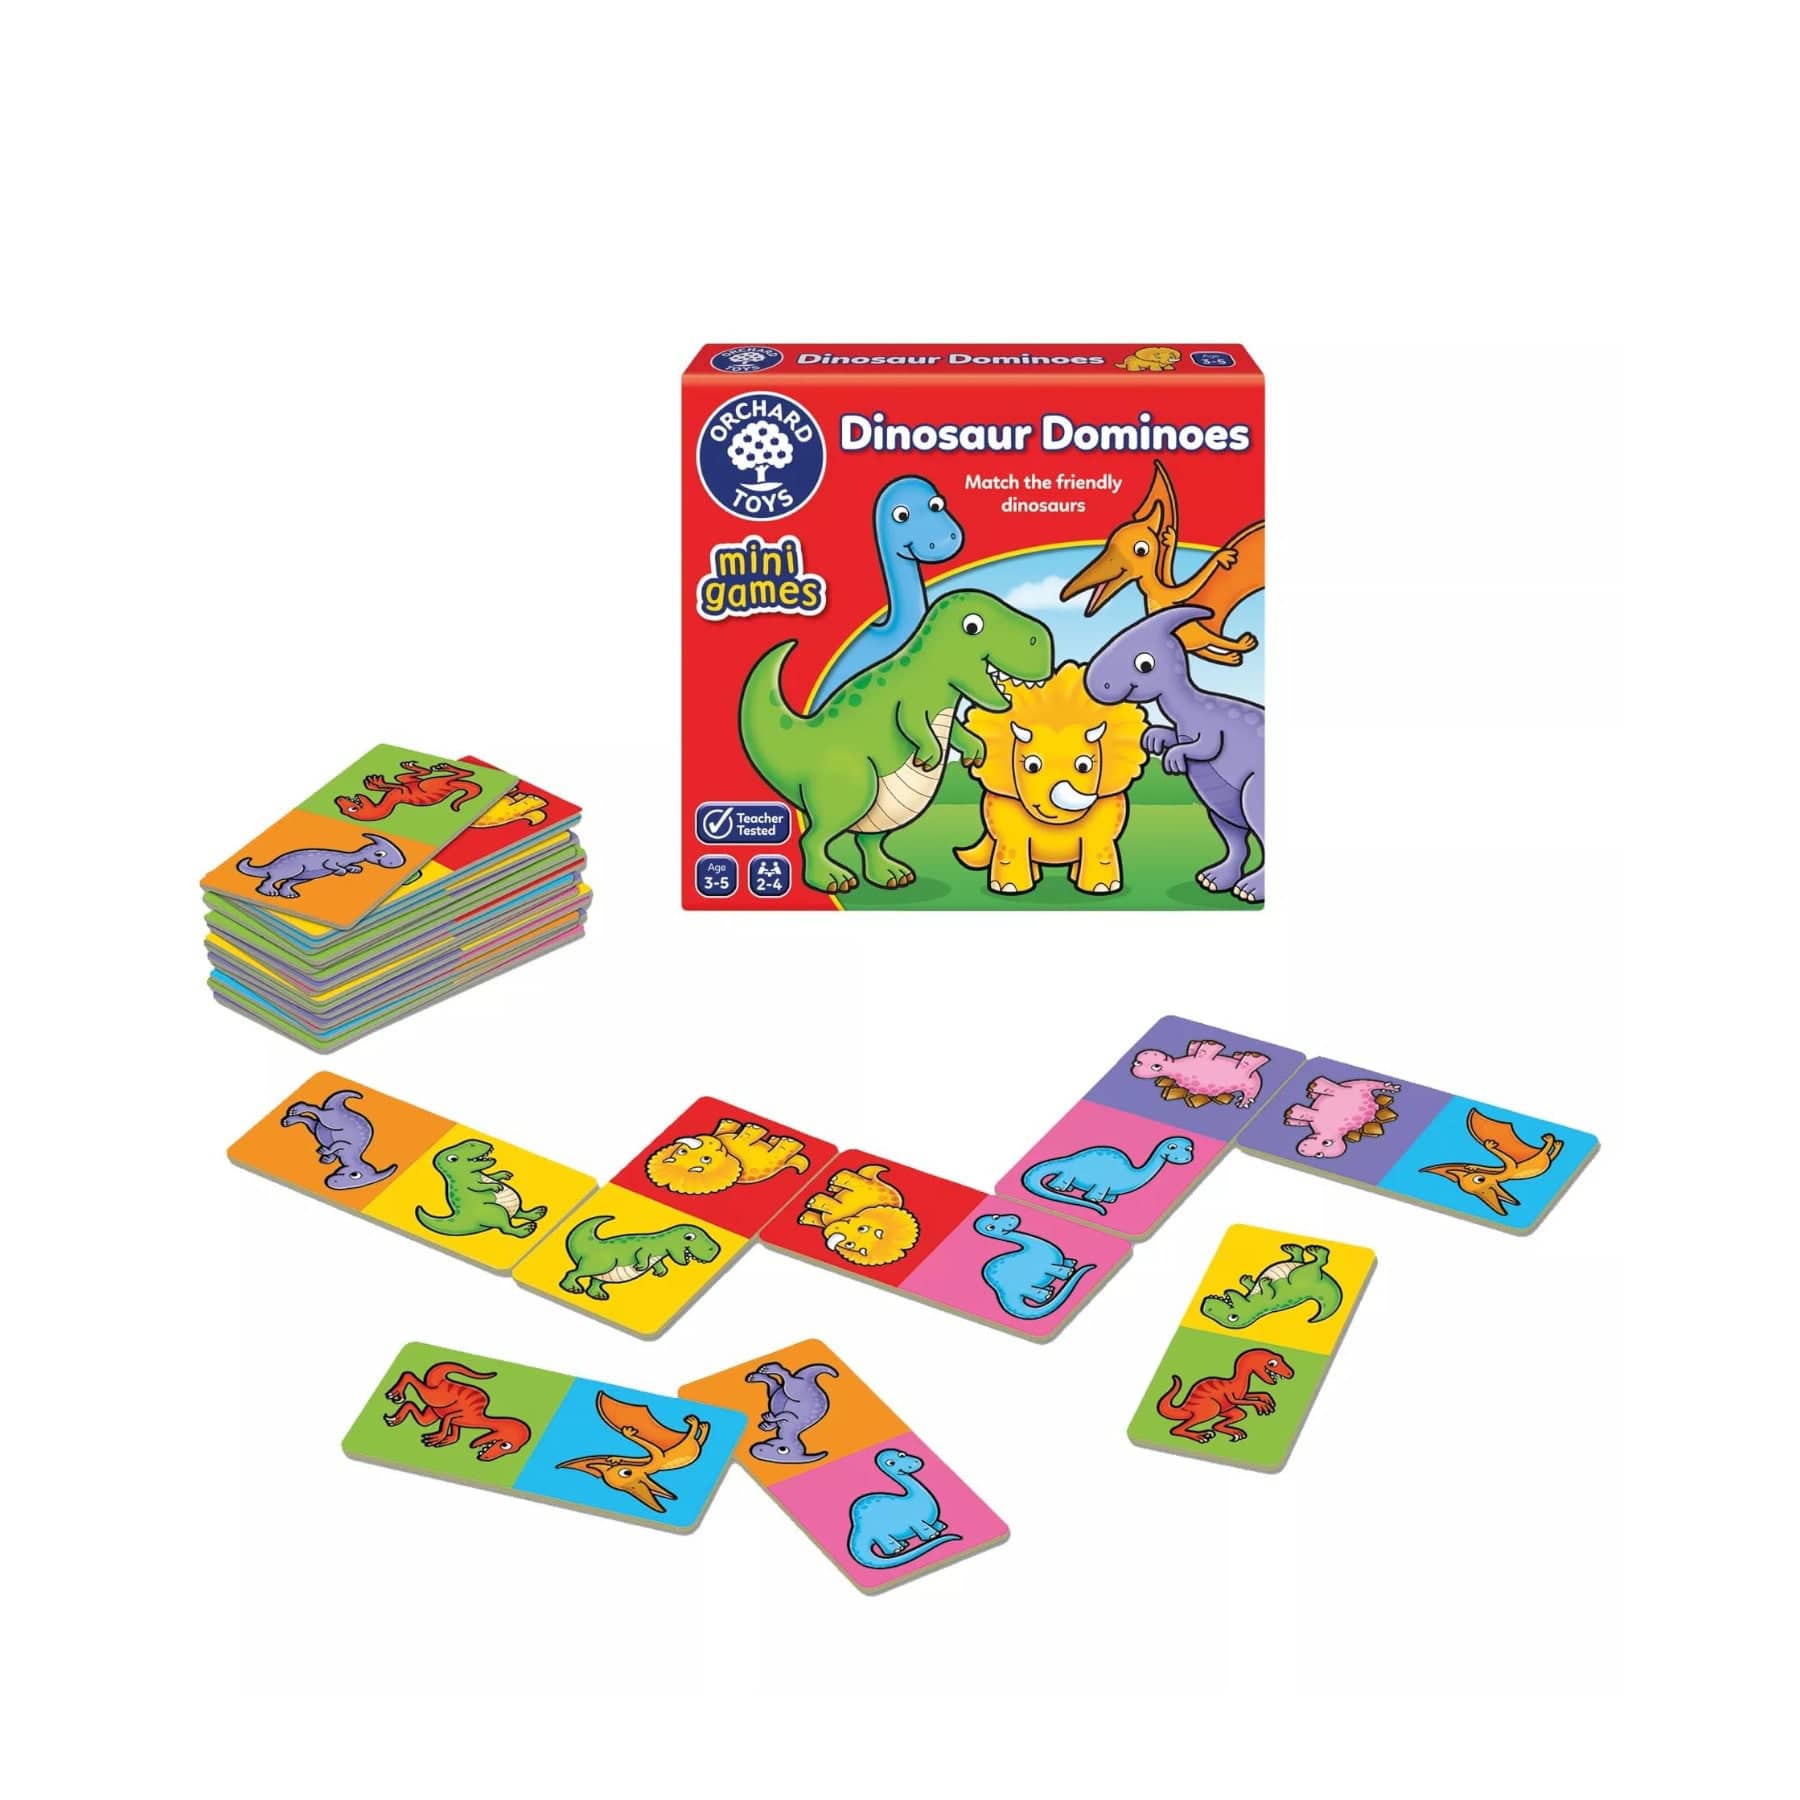 Dinosaur dominoes mini game